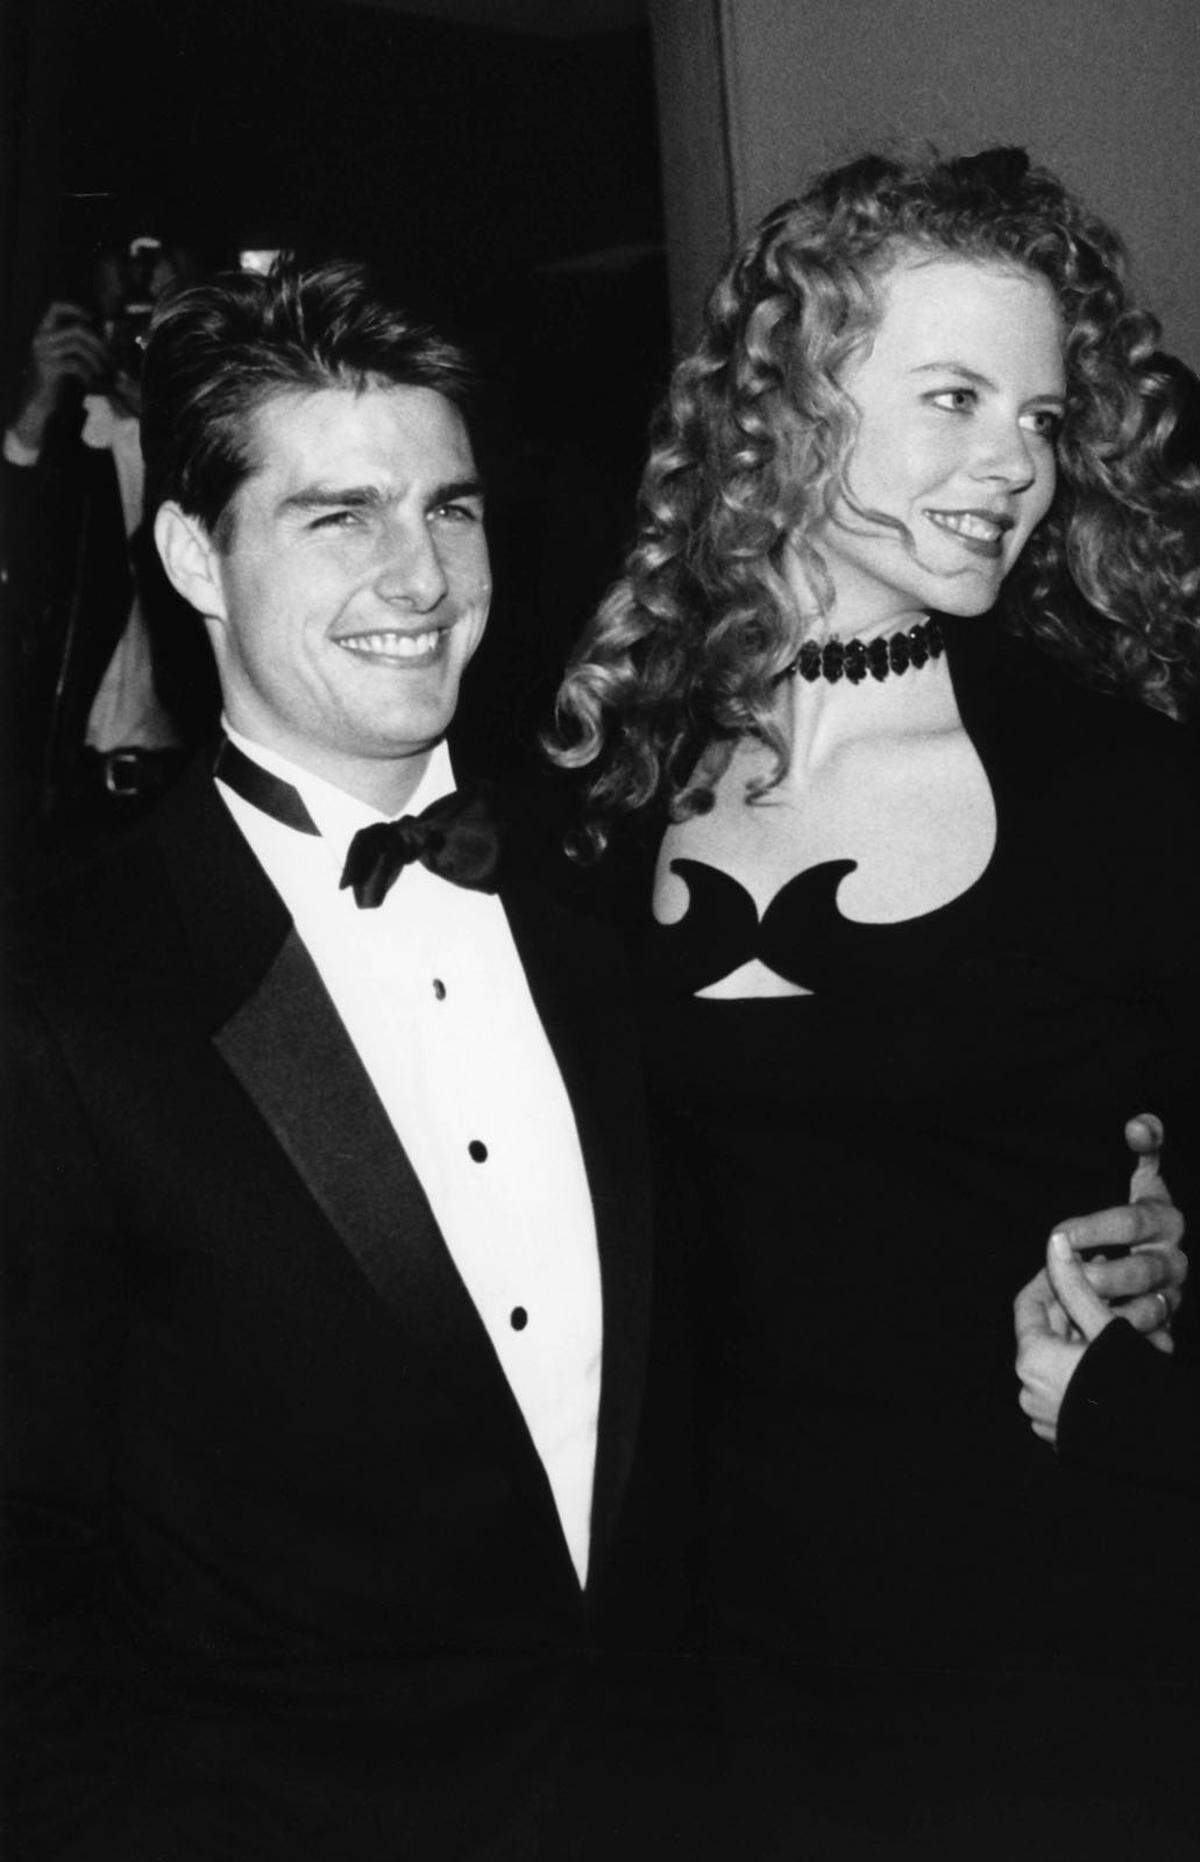 Liebe am Red Carpet. Ein Ausflug in das Kapitel "prominente und mittlerweile gescheiterte Beziehungen": Tom Cruise und Nicole Kidman, 1992.